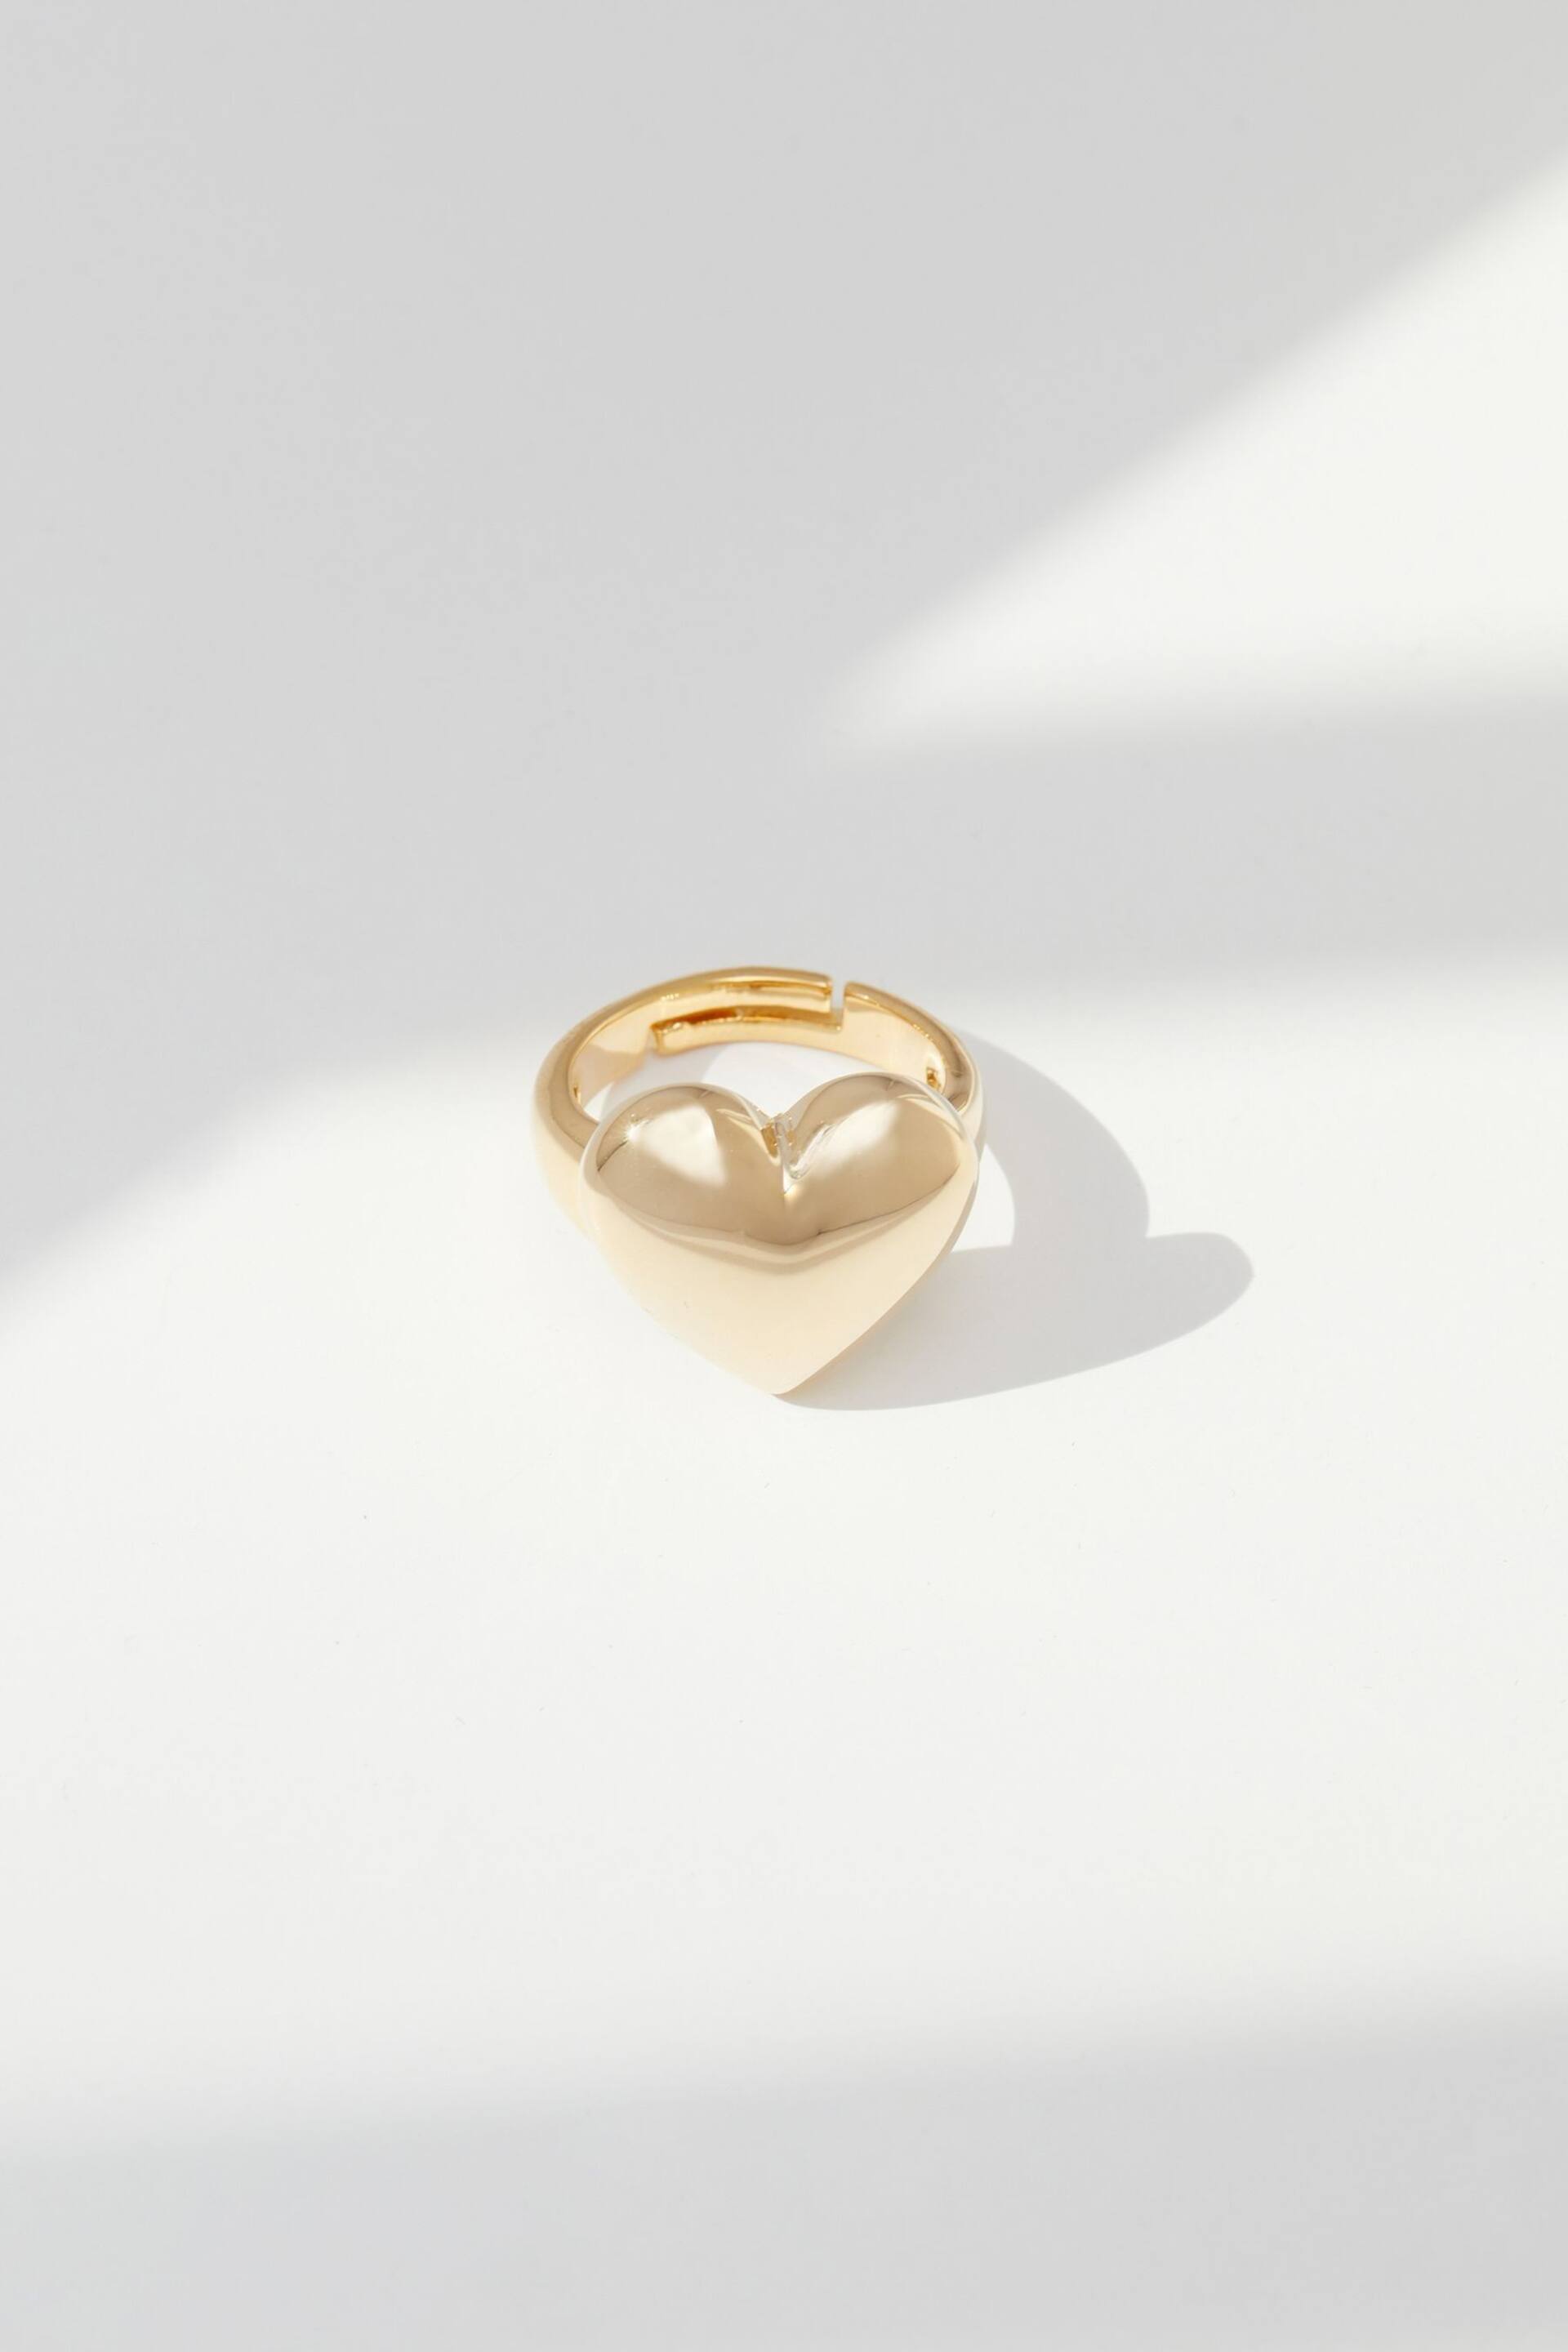 Jon Richard Gold Tone Adjustable Polished Heart Ring - Image 1 of 2